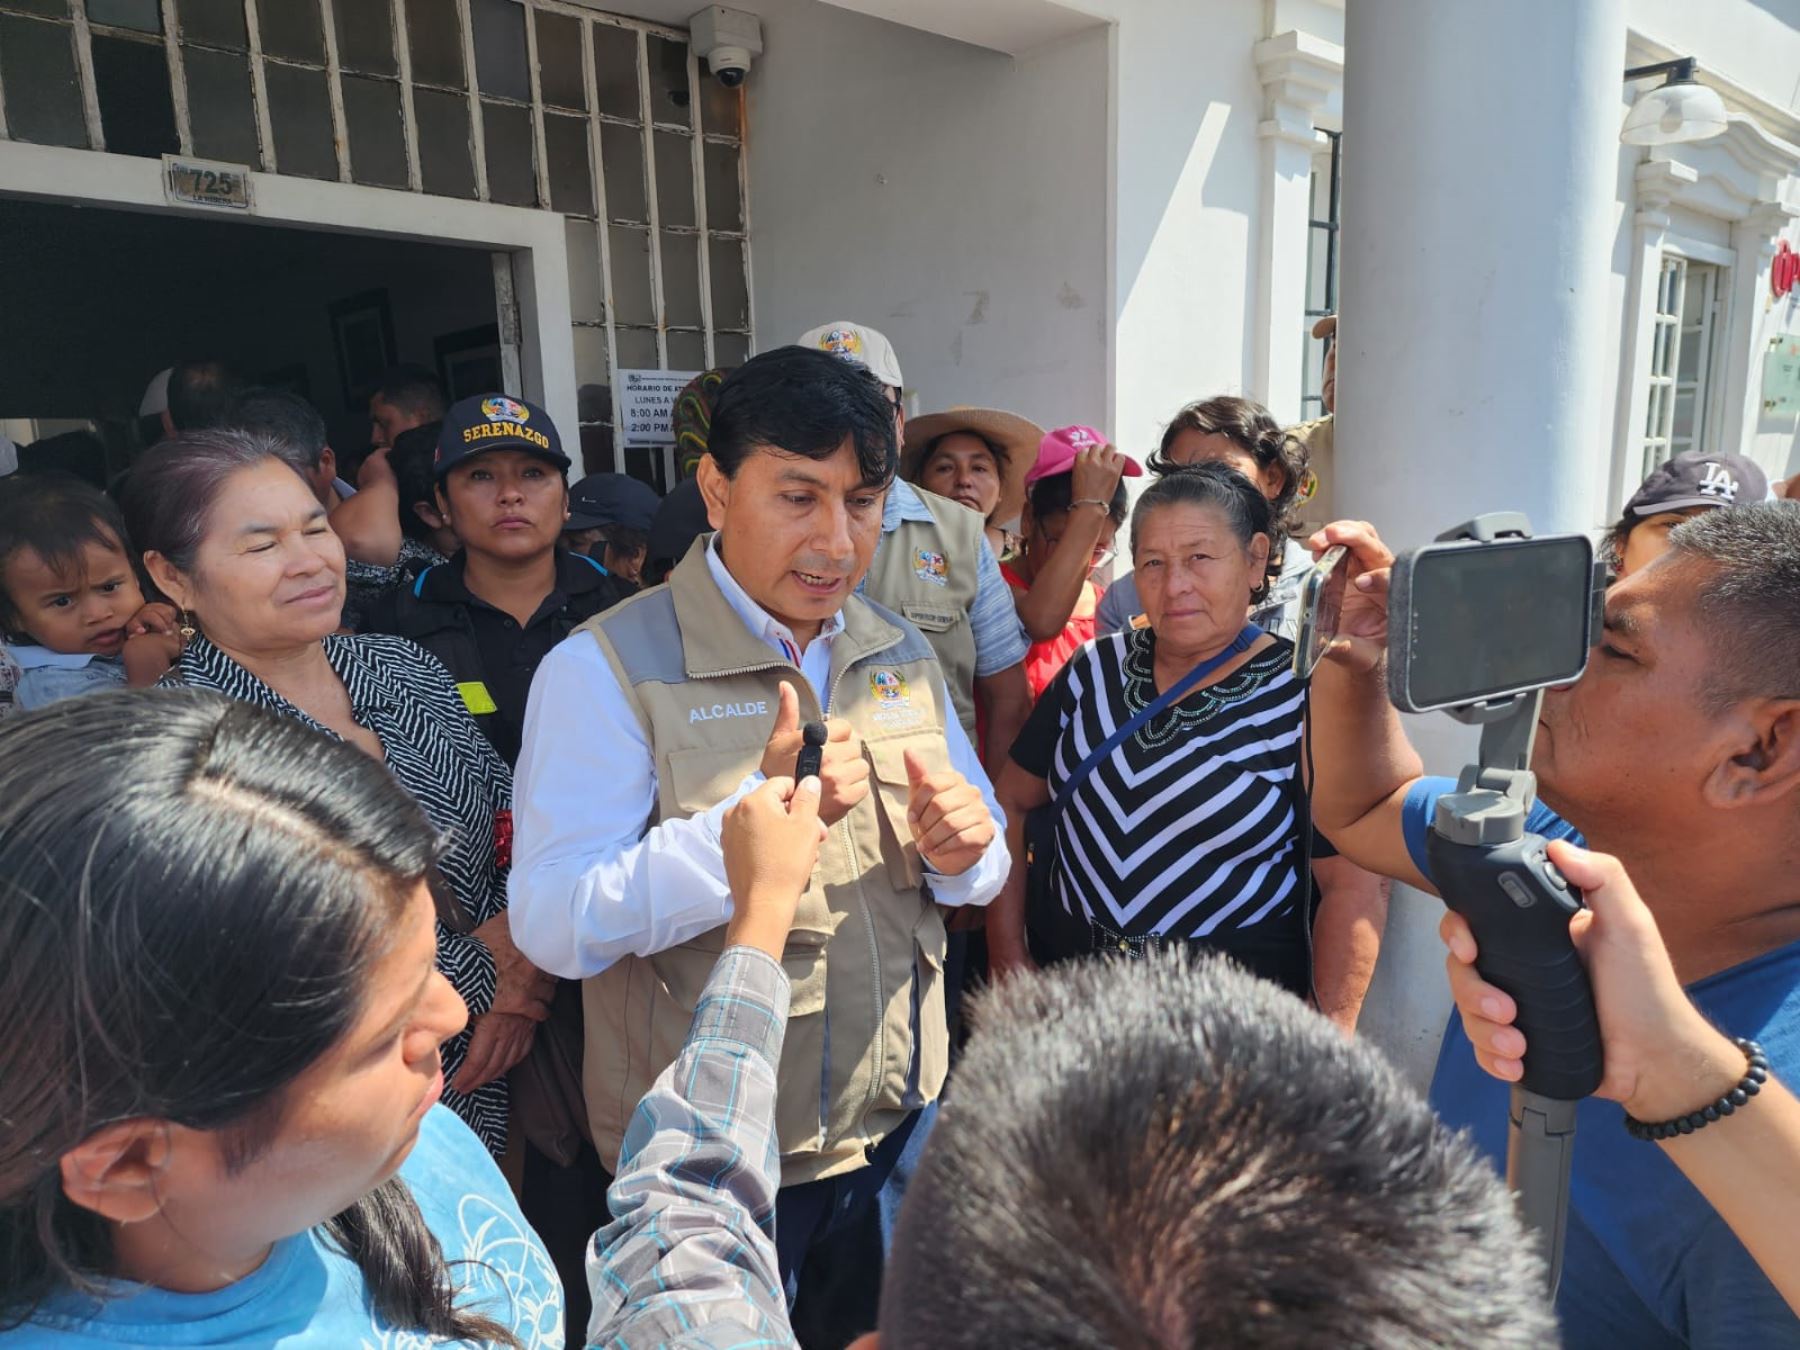 Al salir de la audiencia, el alcalde de Huanchaco, Efraín Bueno, aseguró a los vecinos que su gestión trabaja para el beneficio y progreso del distrito. Foto: ANDINA/Difusión